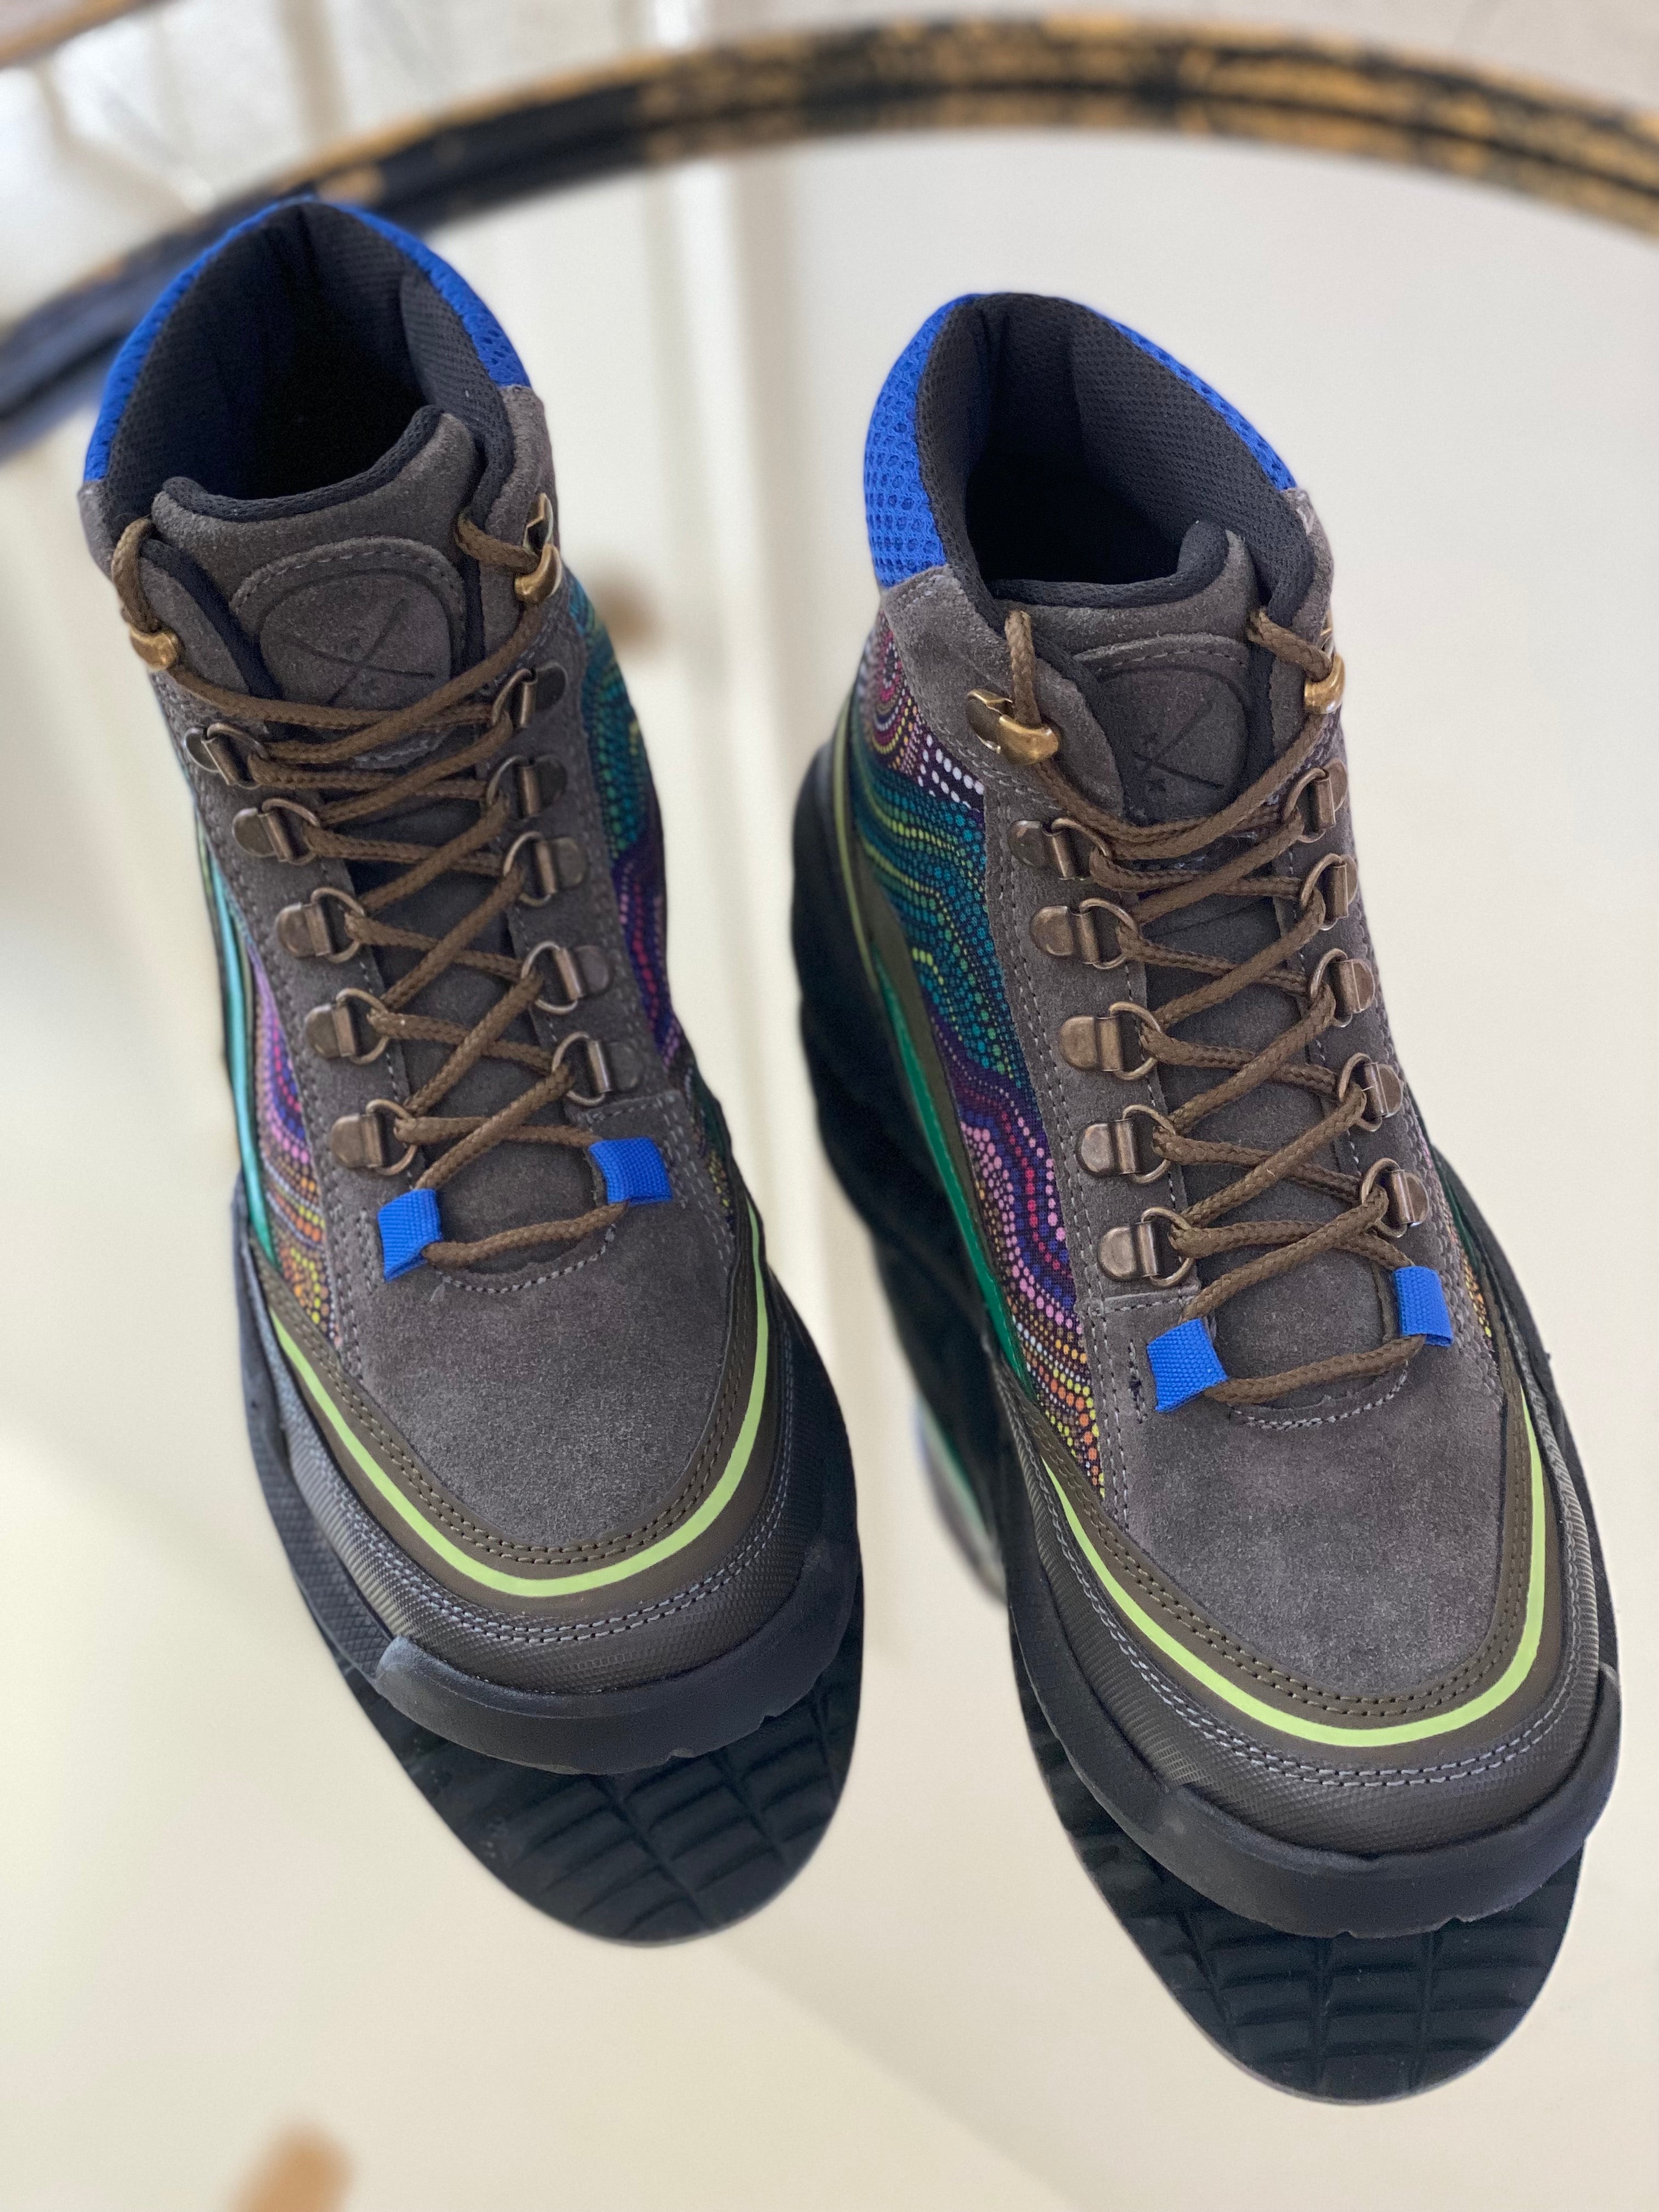 Brisbane Trekk Boot – Inkkas - Global Footwear